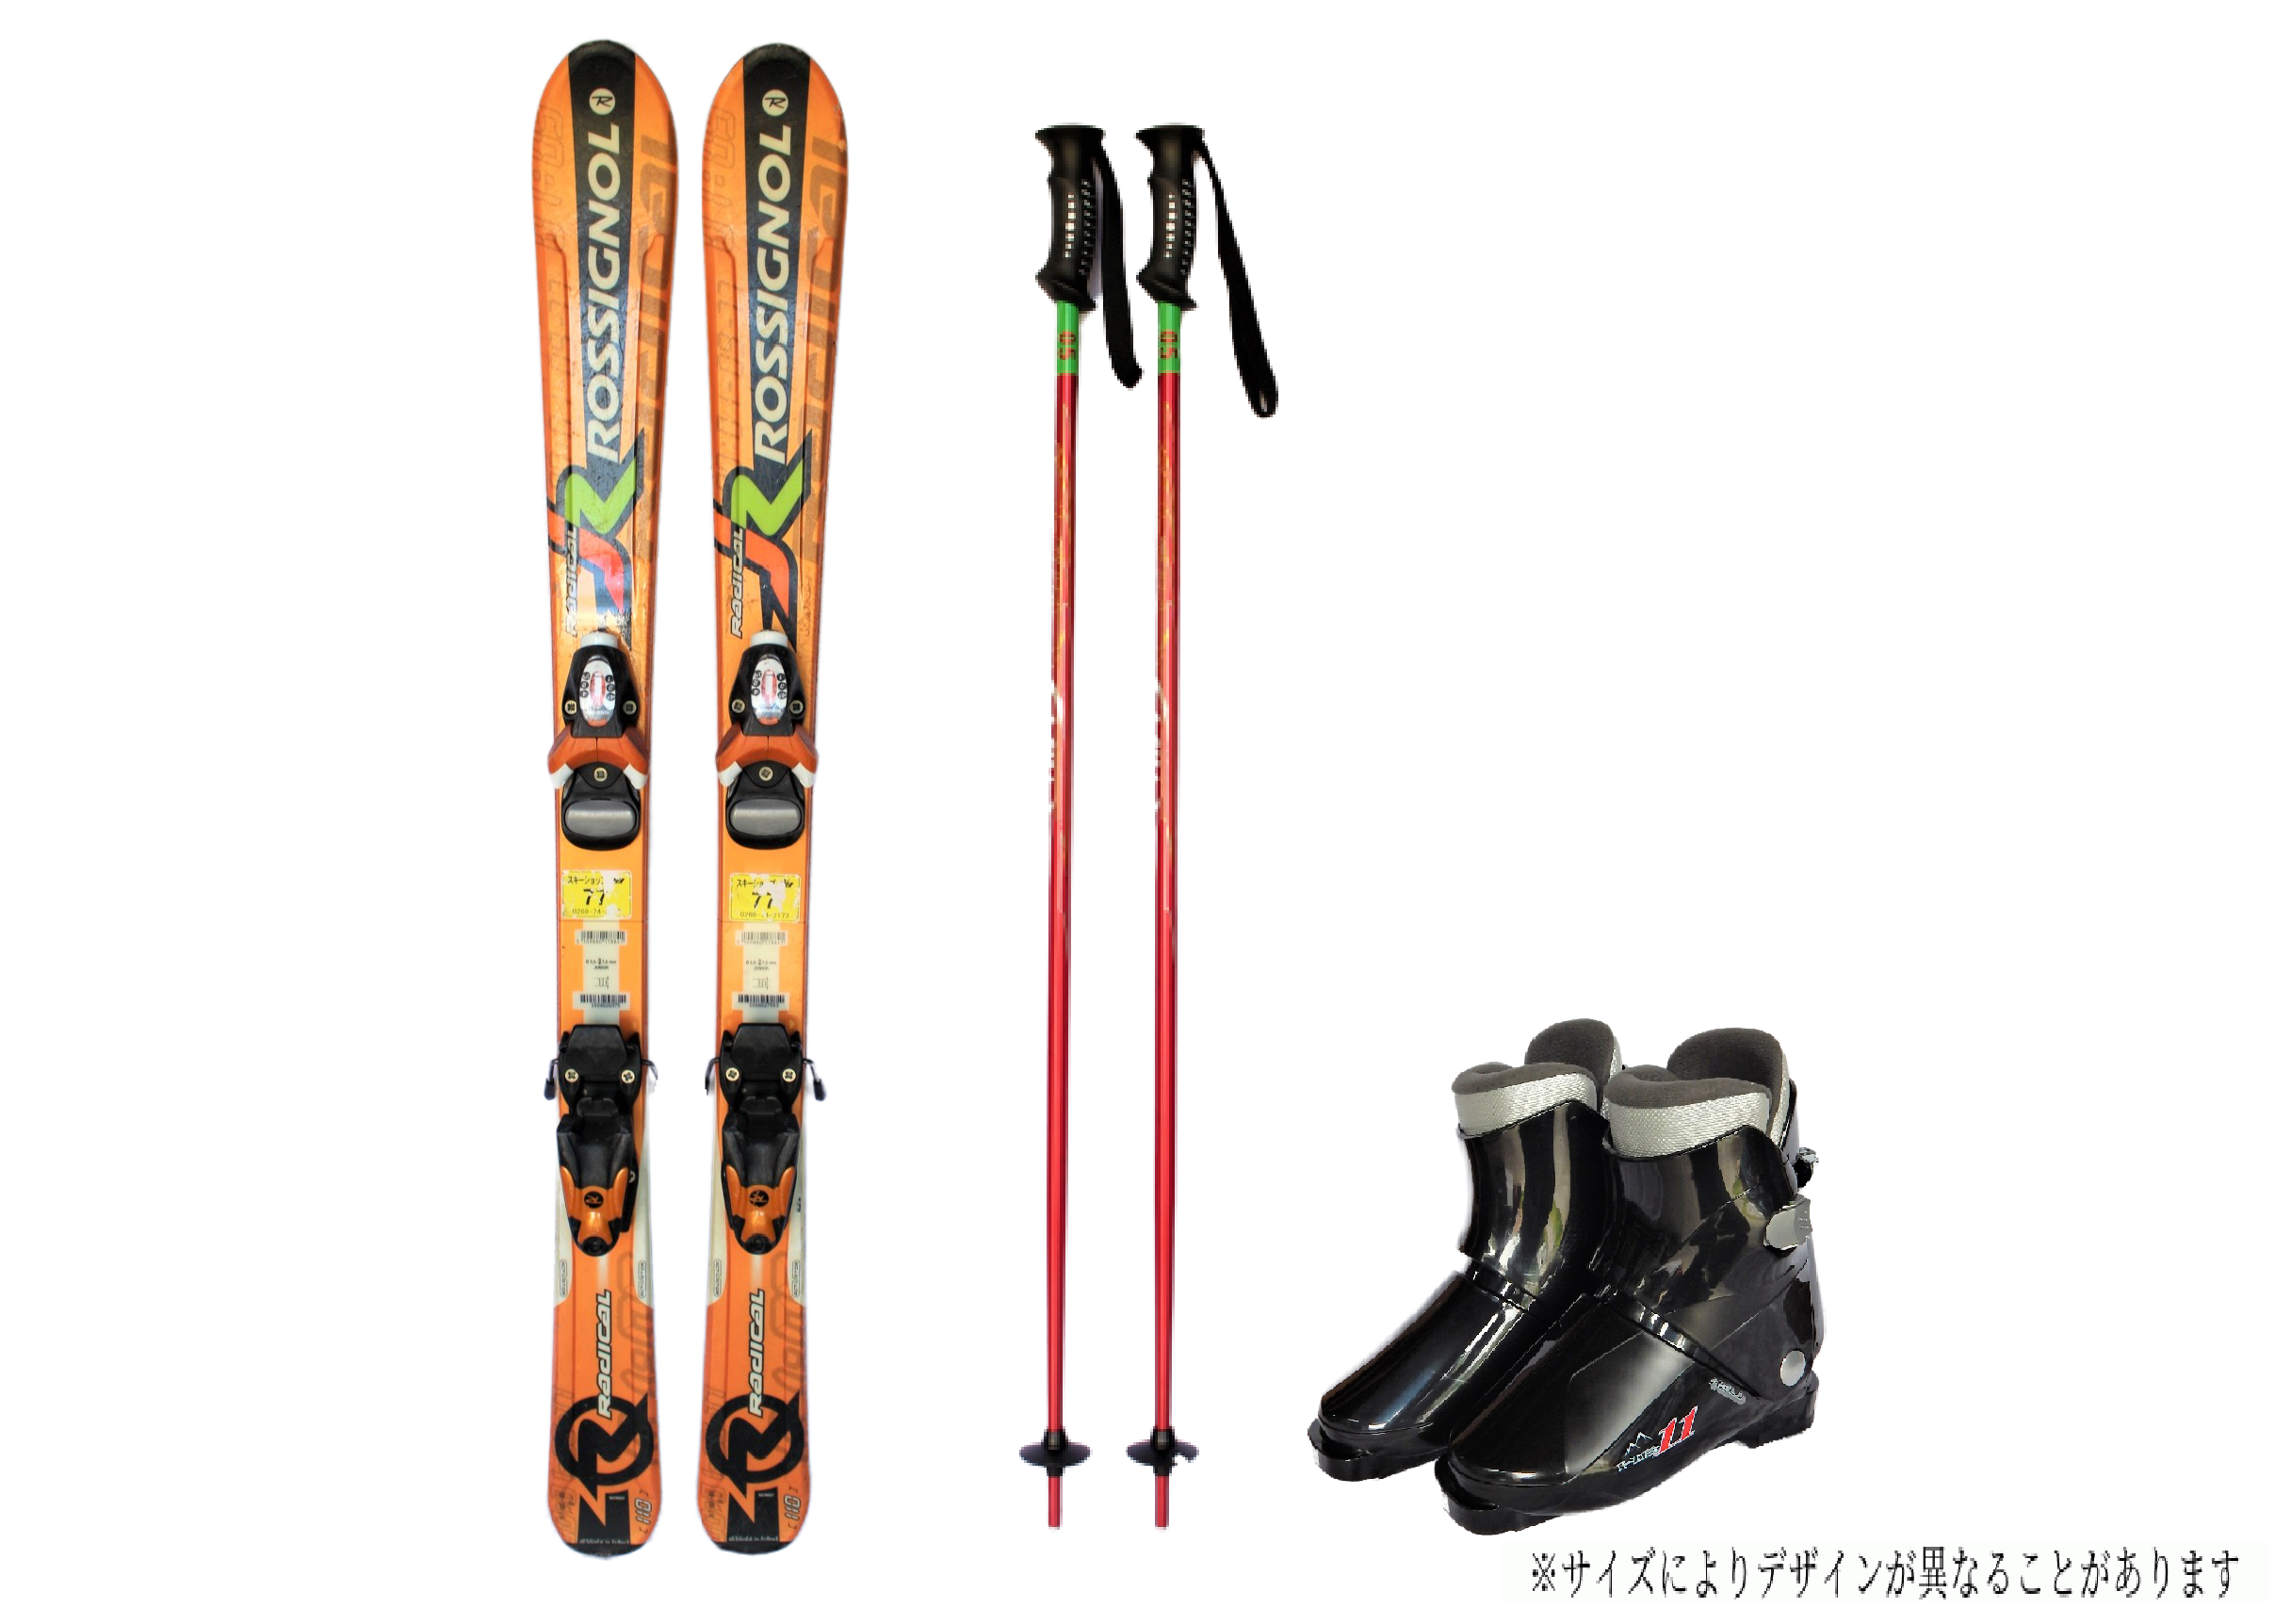 【2月開催スキー・スノーボードツアー】レンタルスキー・レンタルスノーボード申込ページ